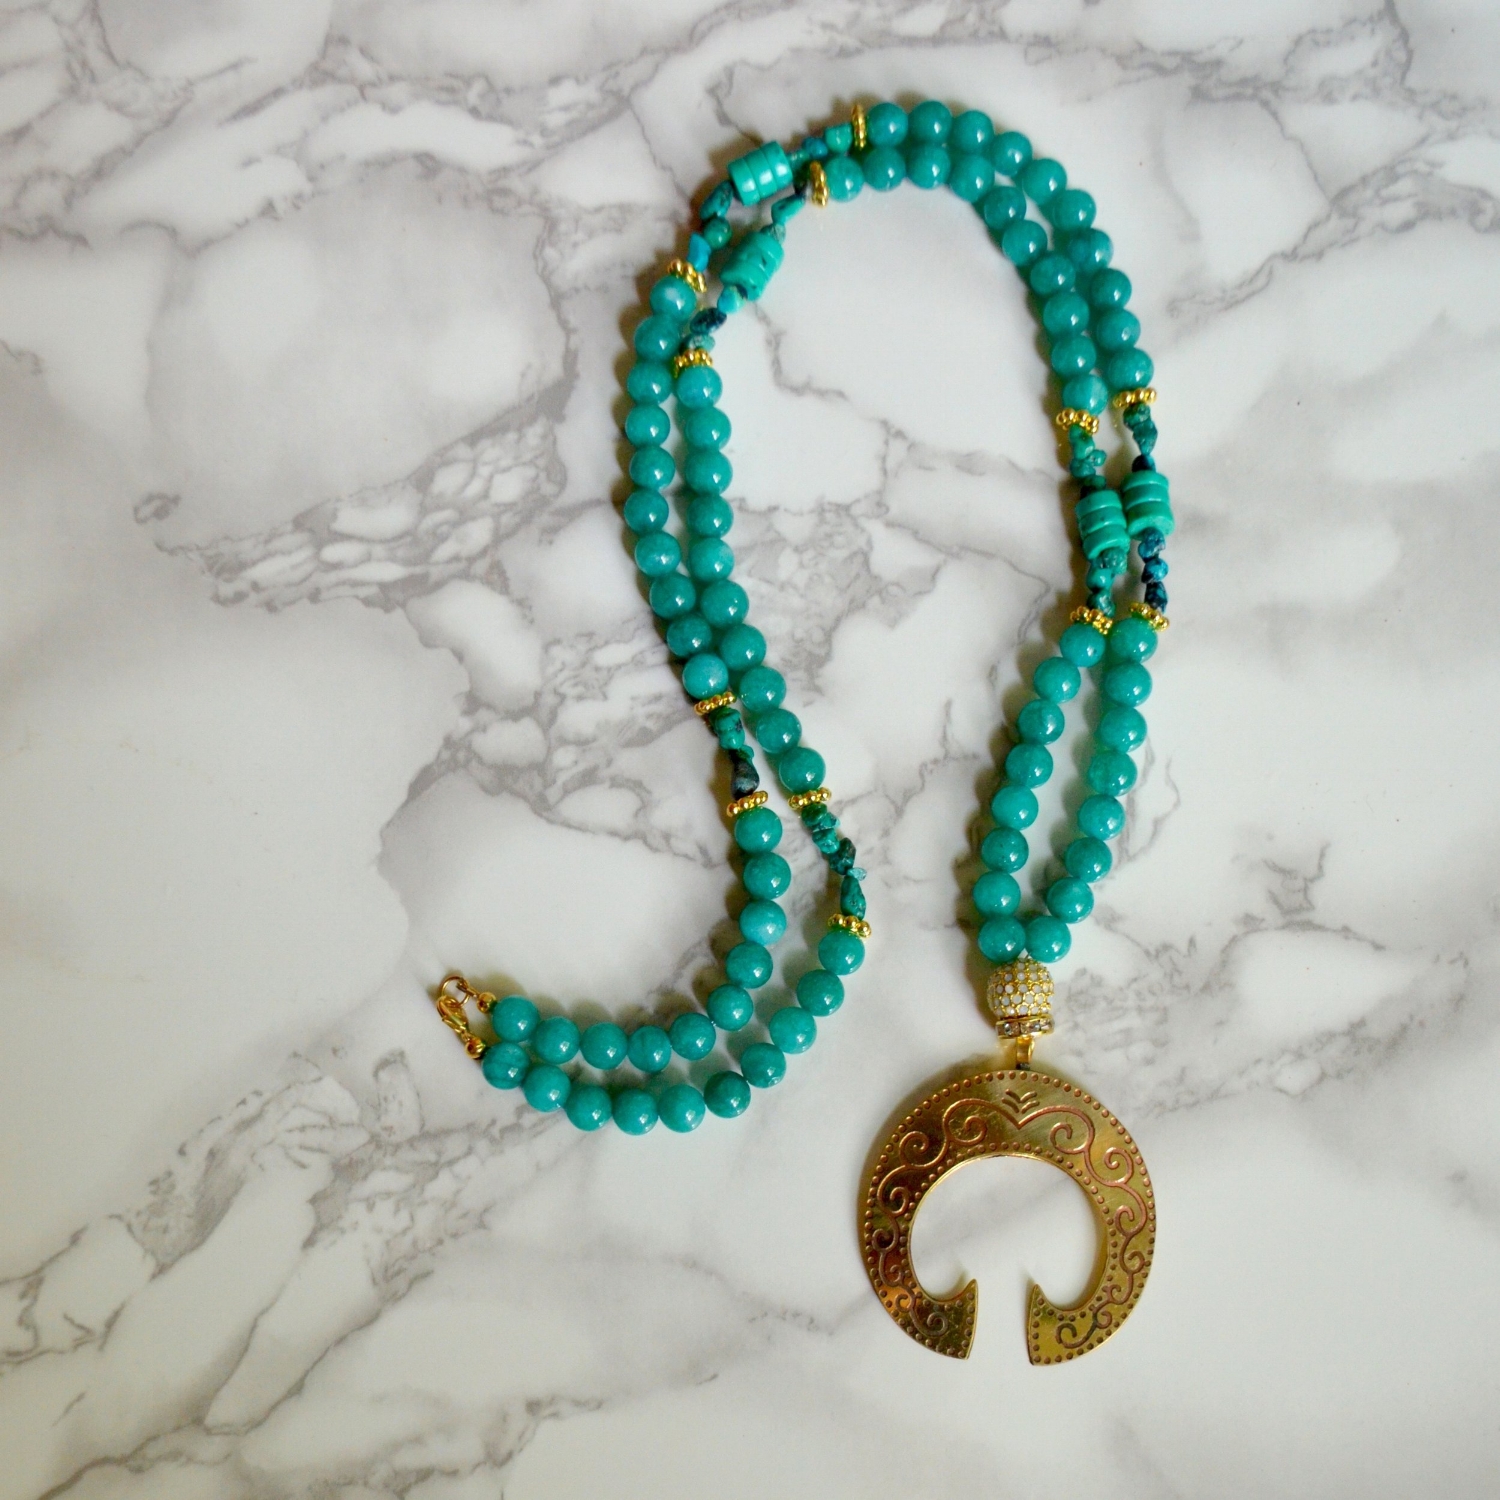 Turquoise boho necklace